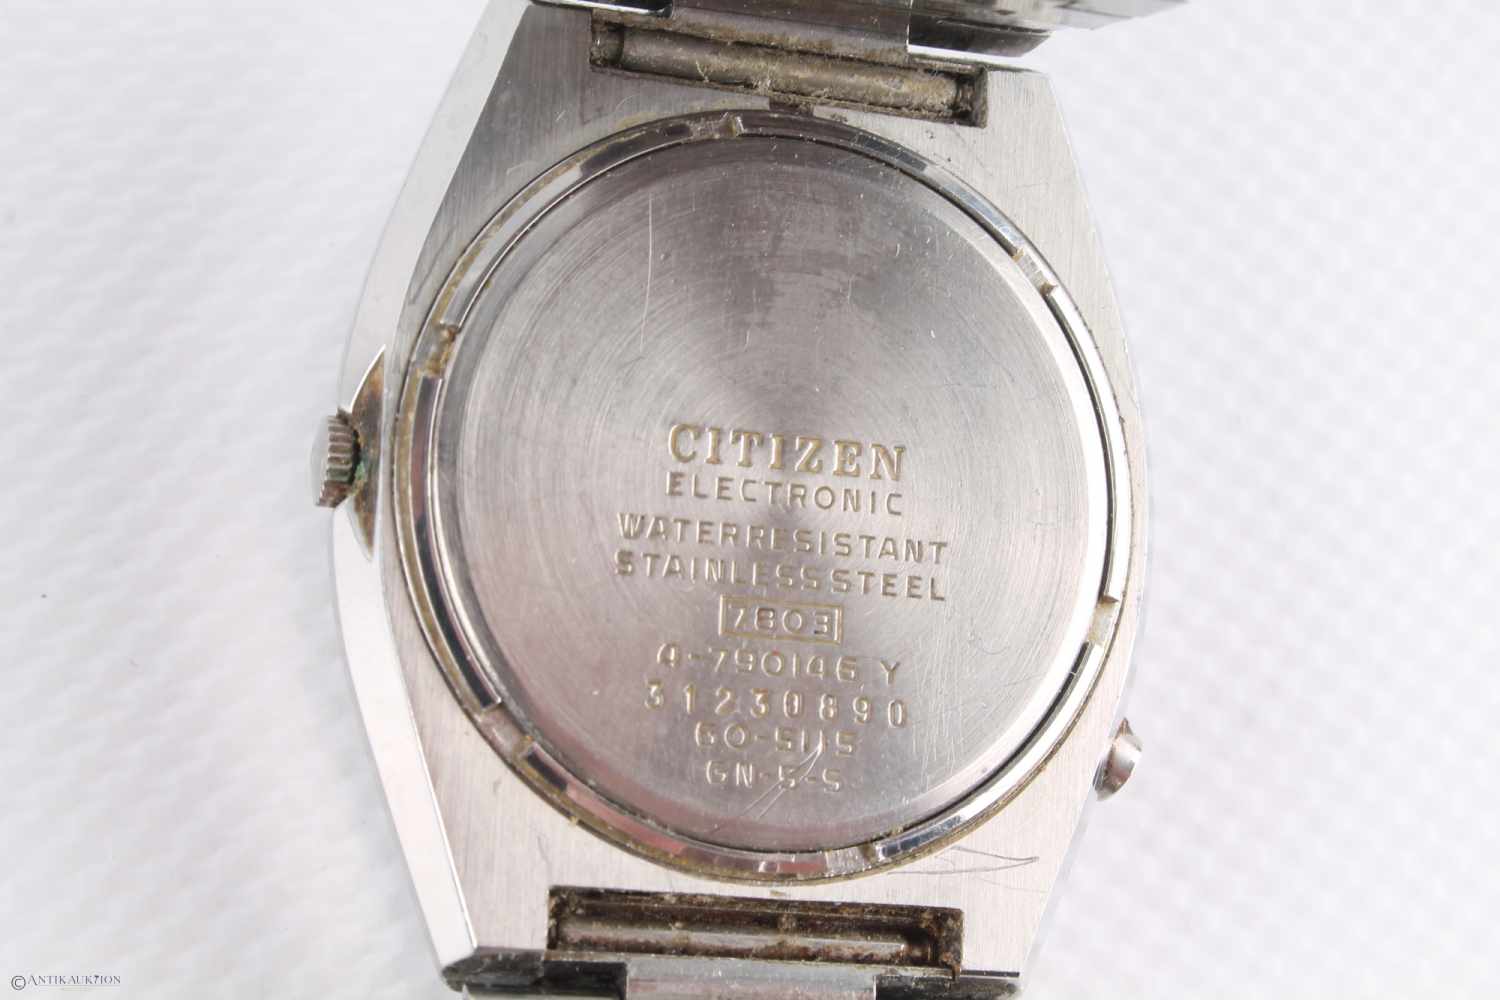 CITIZEN Cosmotron Electronic 7803 Armbanduhr, HAU, Edelstahlgehäuse, Ref-Nr. 31230890, Kaliber 7803, - Image 4 of 5